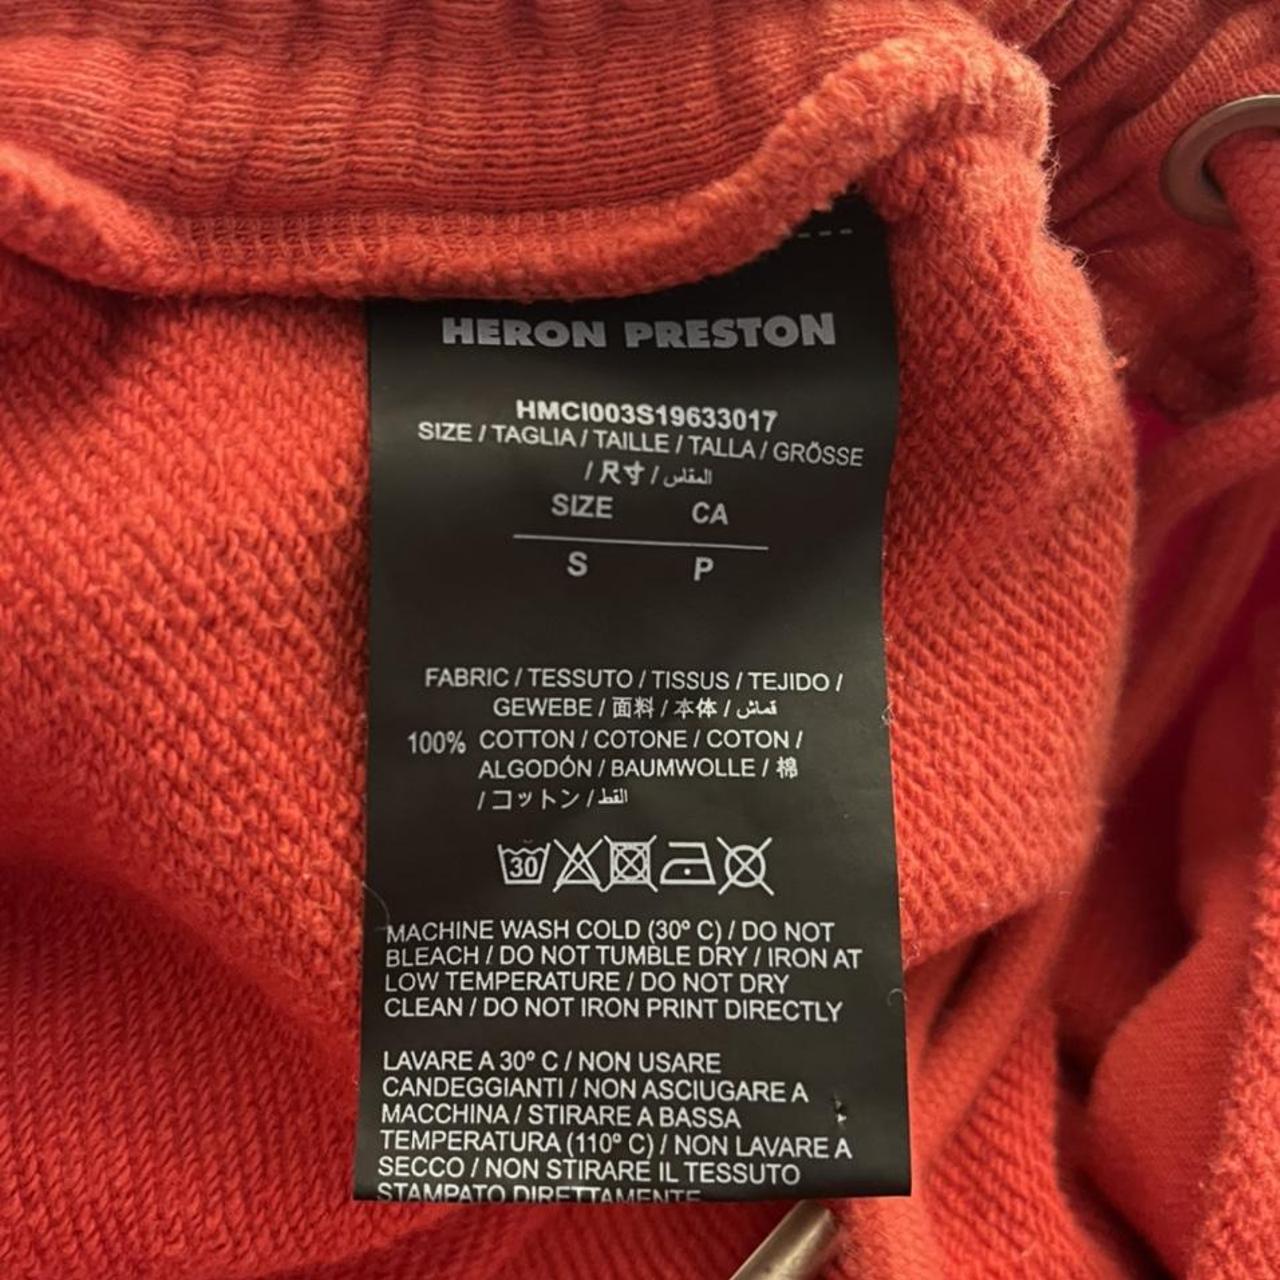 Product Image 4 - Heron Preston shorts (unisex)

Size S